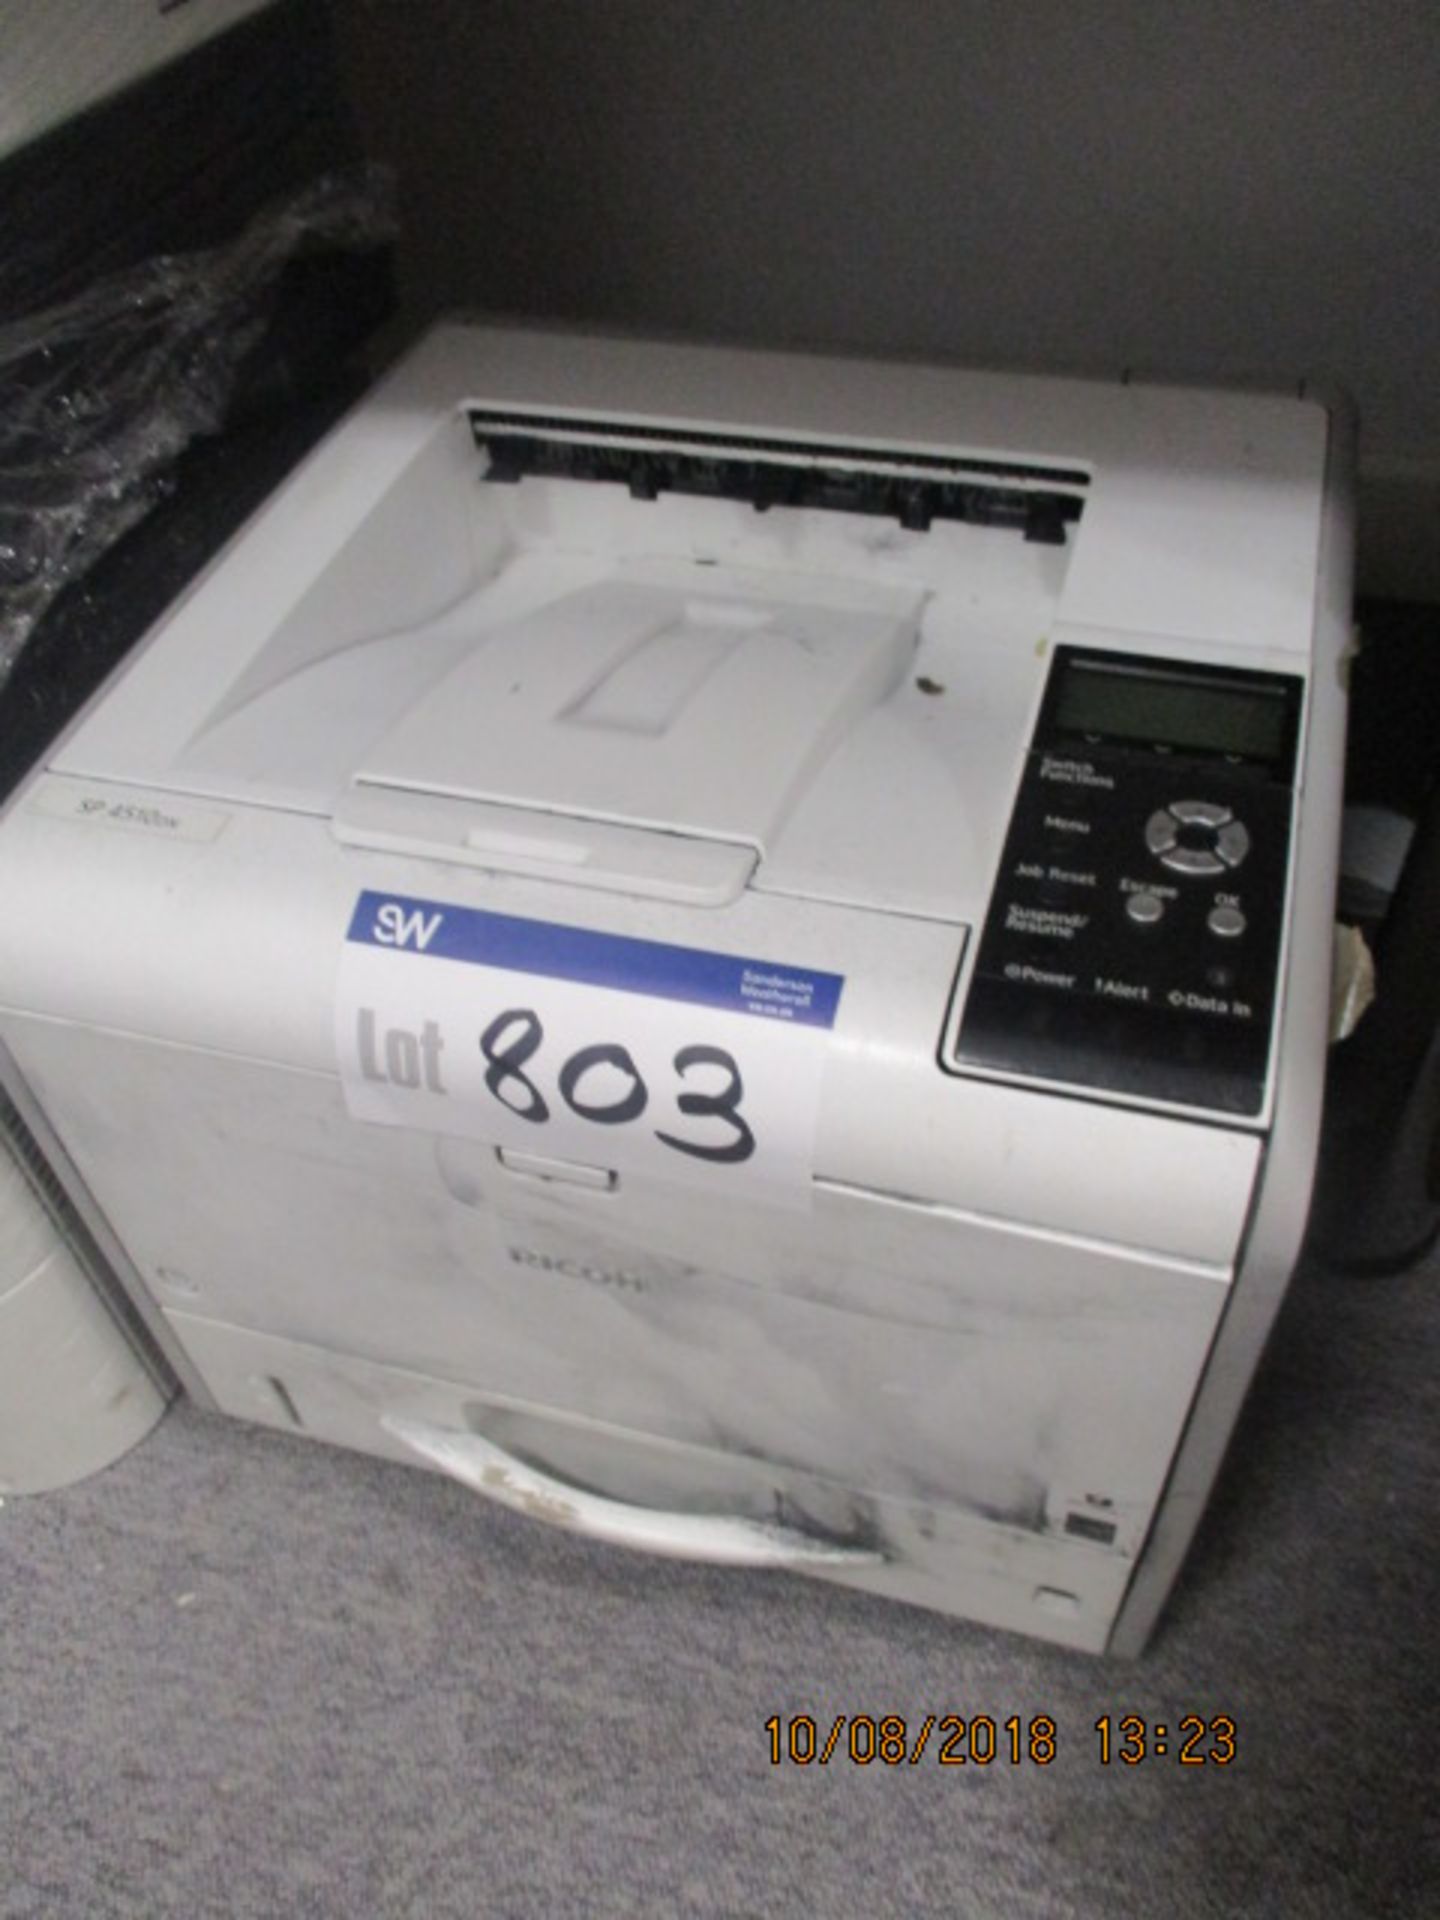 Ricoh SP 4510DN Printer